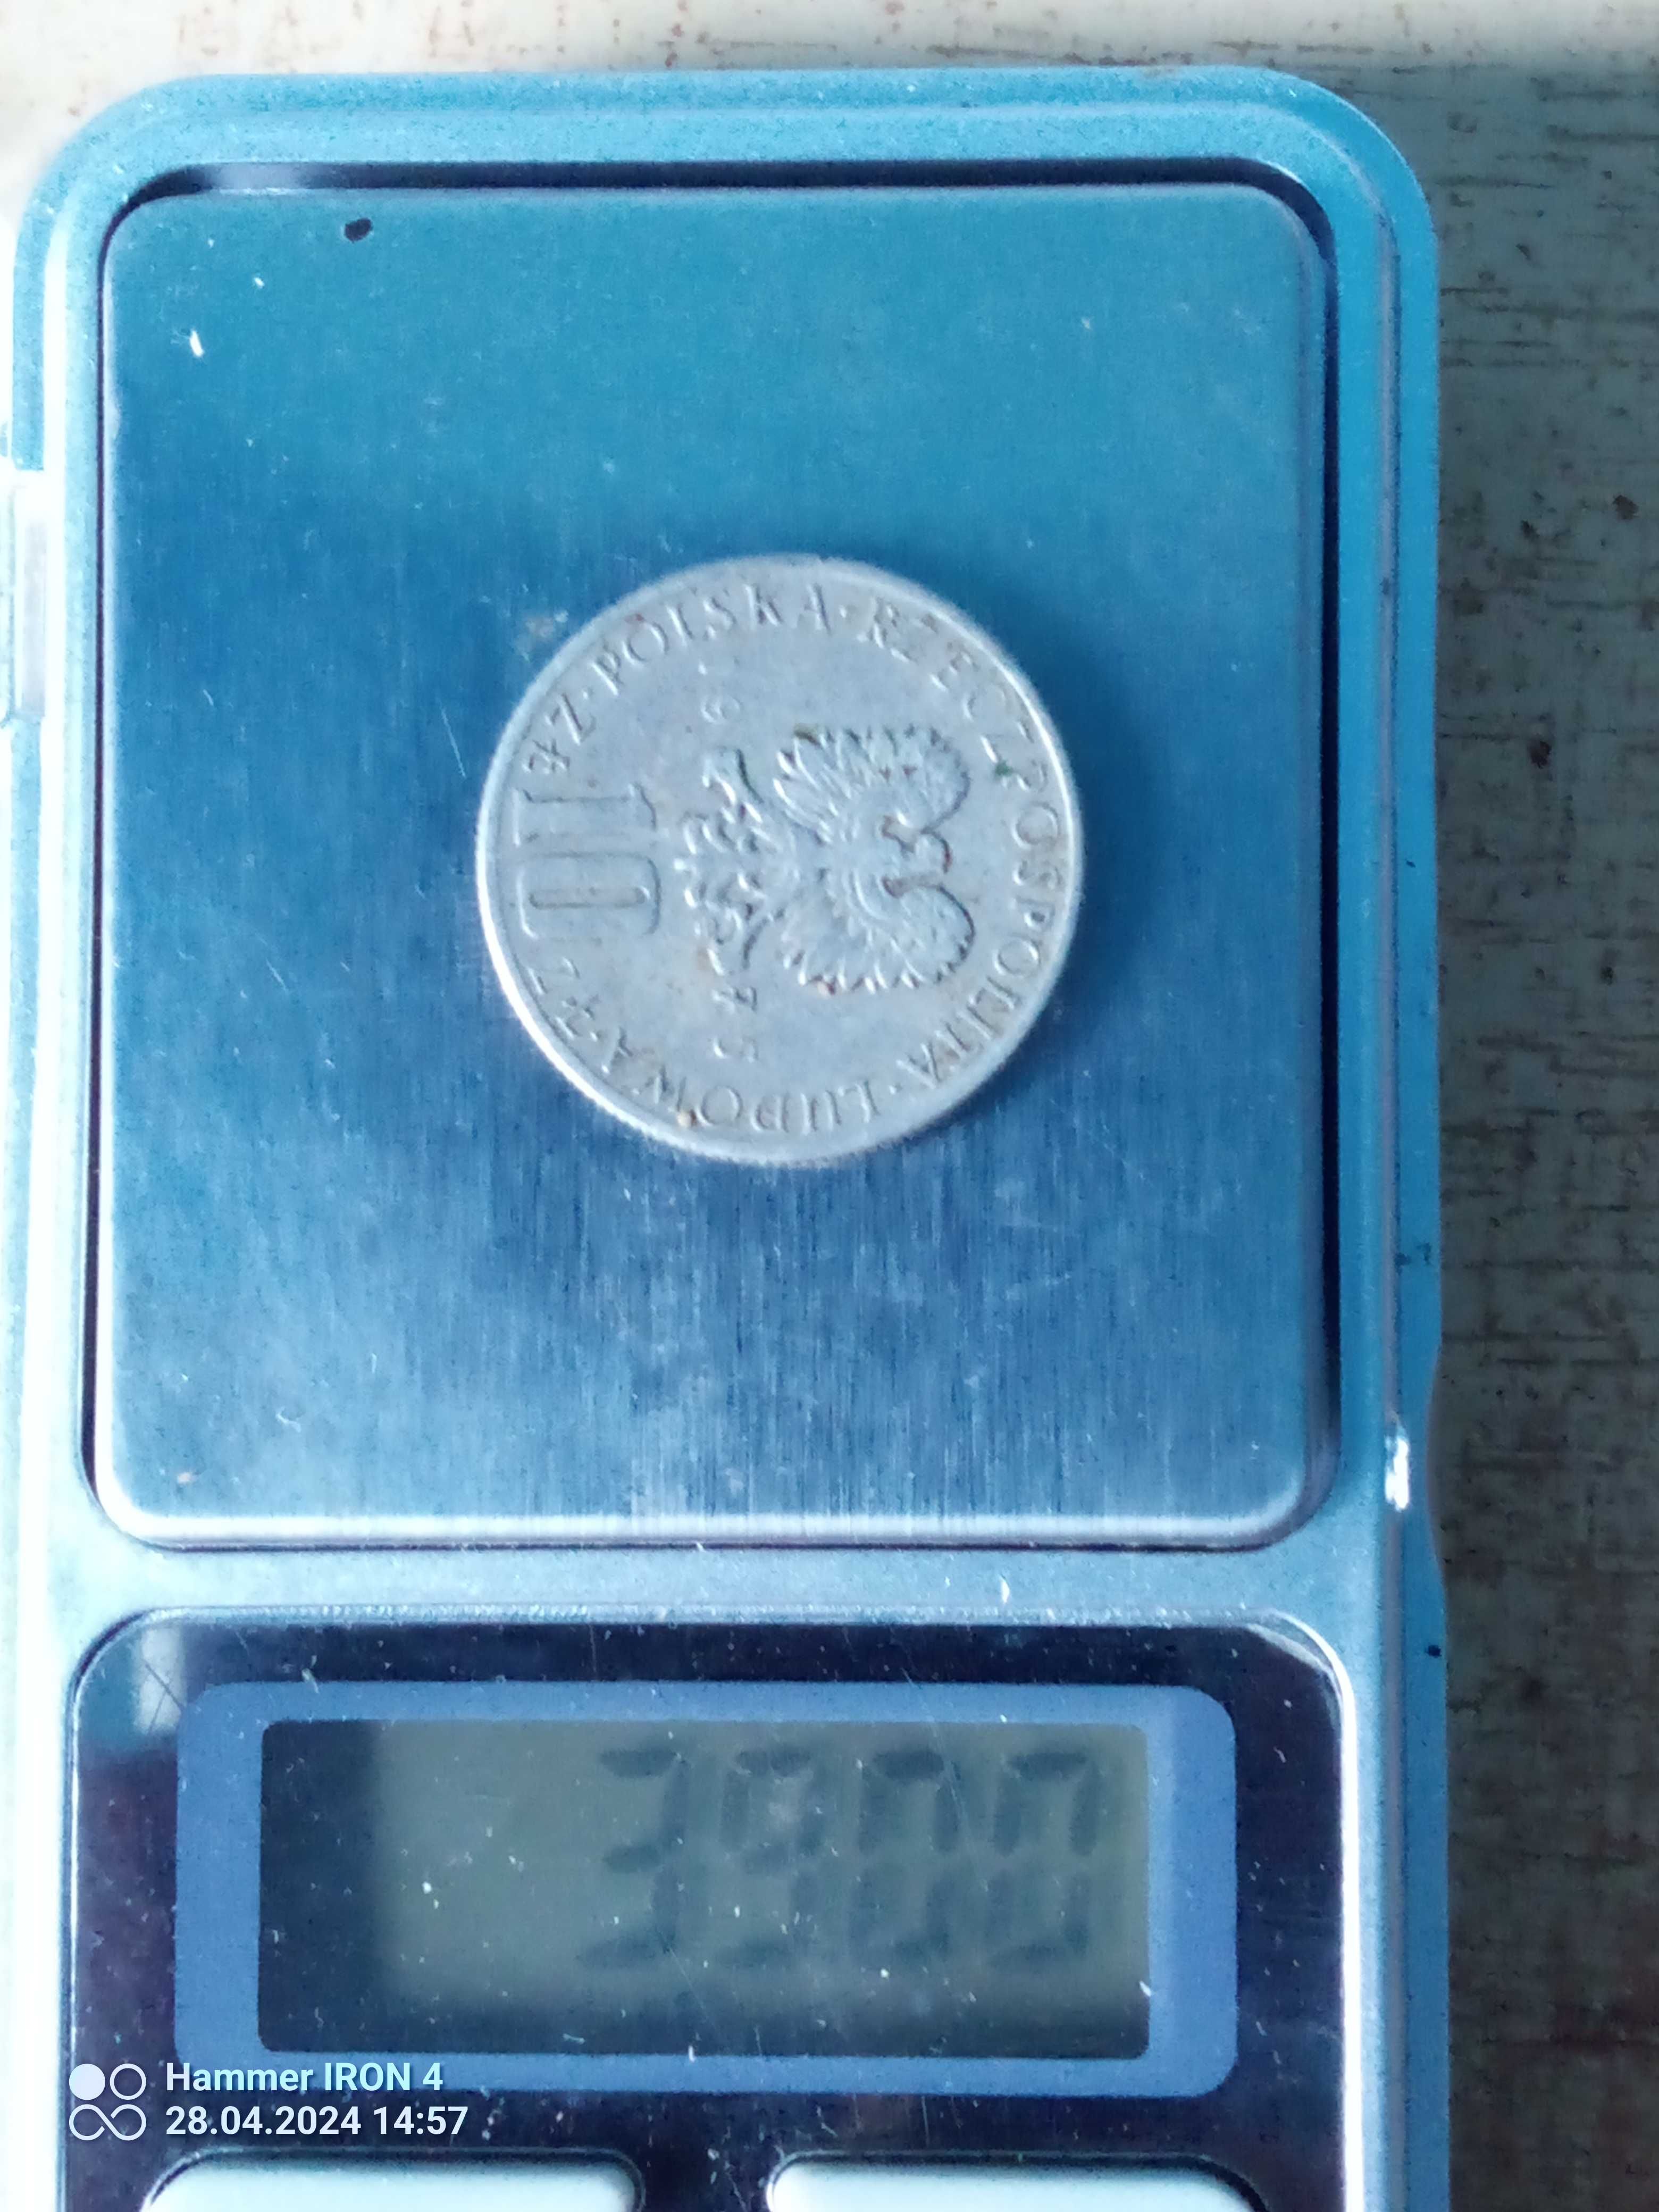 Sprzedam monetę Bolesław Prus 10 zł z 1975rok orginał